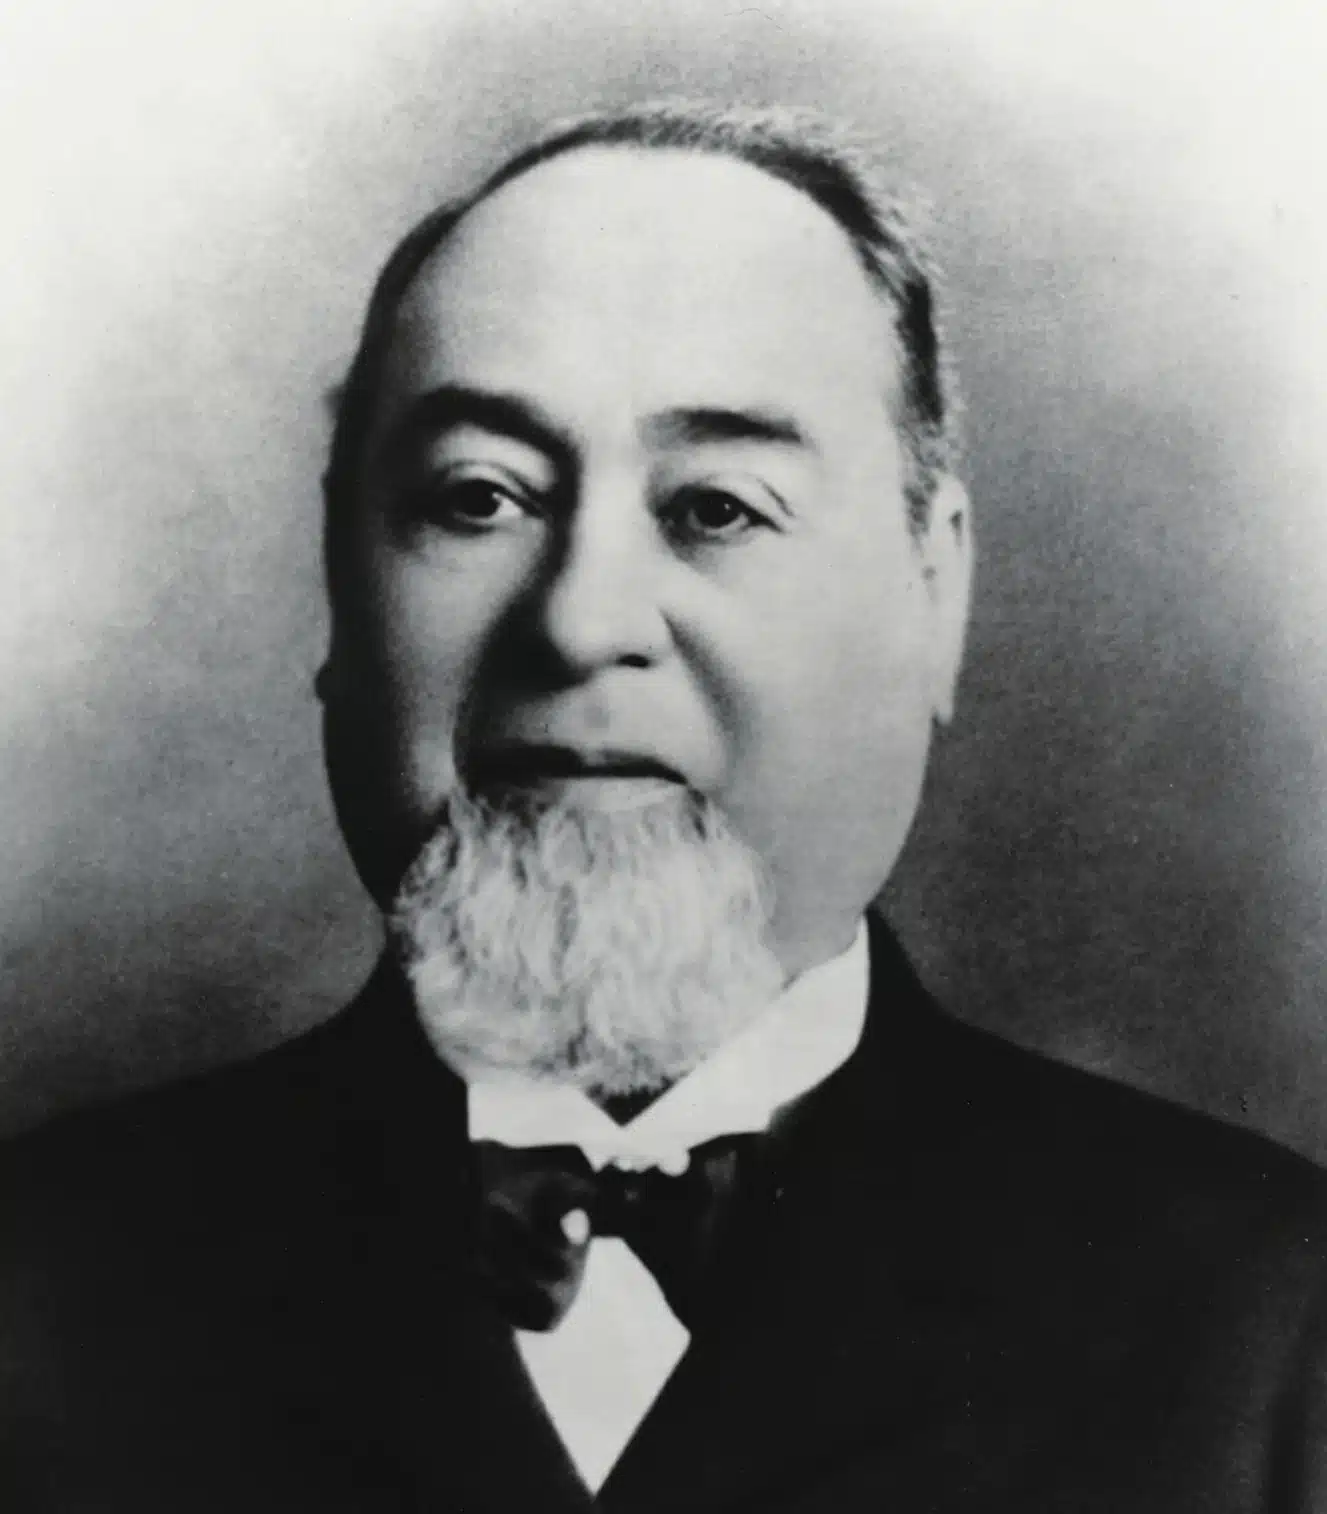 Levi Strauss, fondateur de la marque Levi's